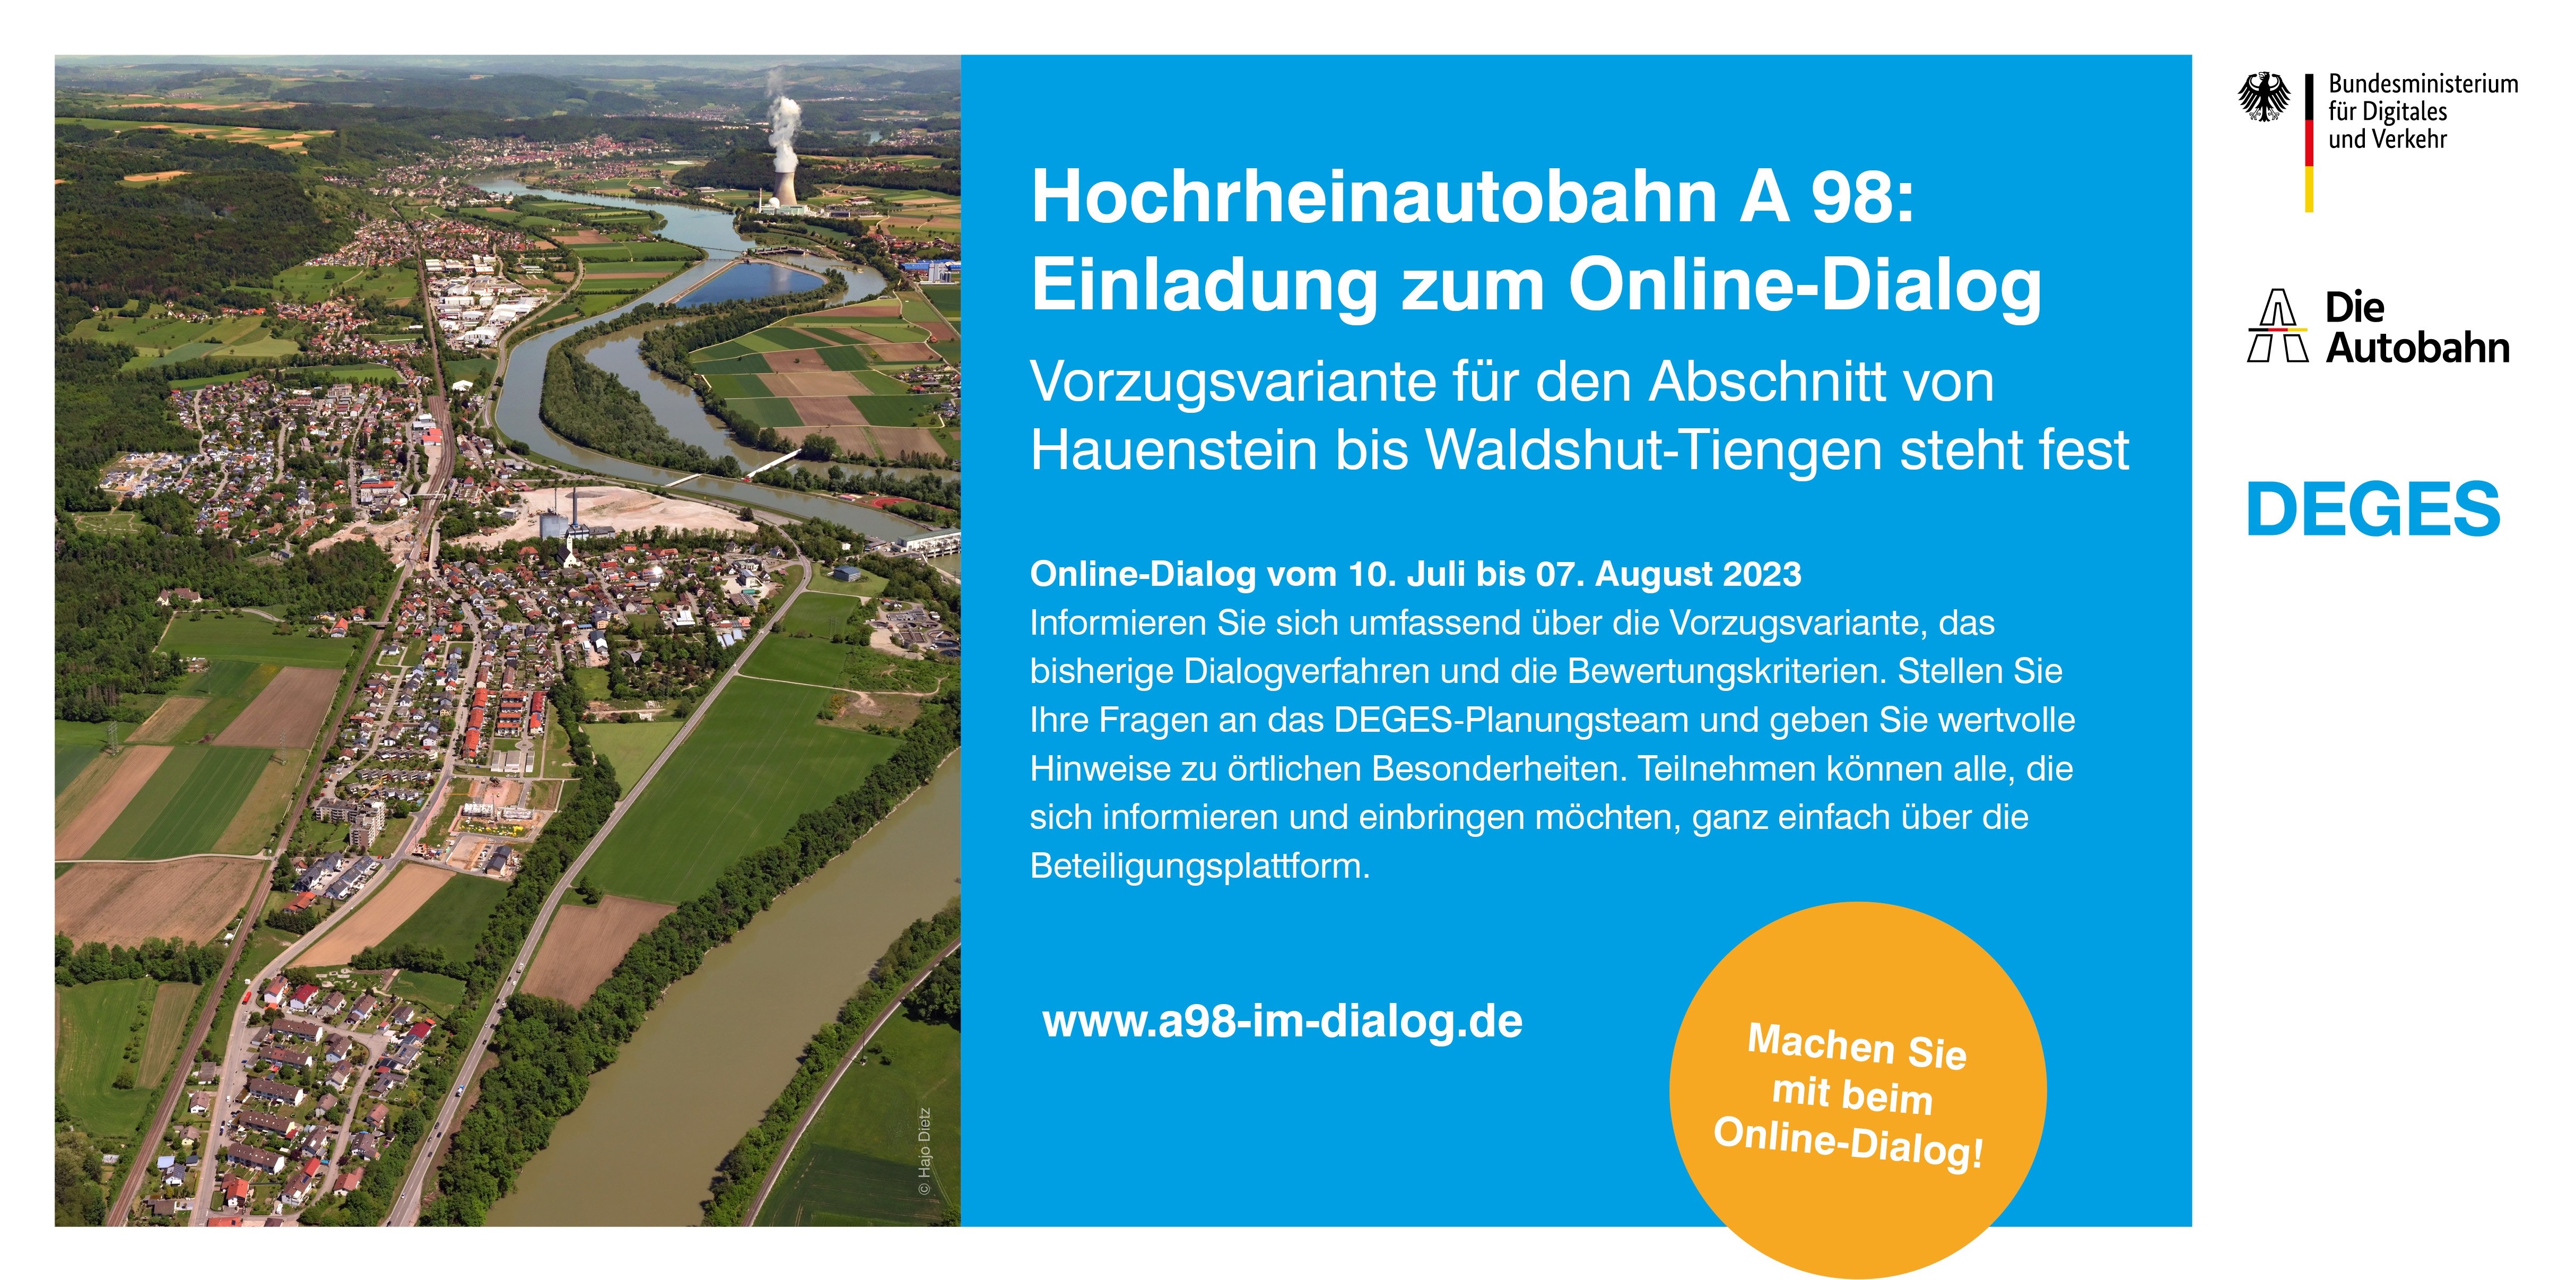 Flyer: links im Bild, ein Luftbild Albbruck in Richtung Waldshut; rechts der Text in weiß mit Blauem Hintergrund, Hochrheinautobahn A98: Einladung zum Online Dialog